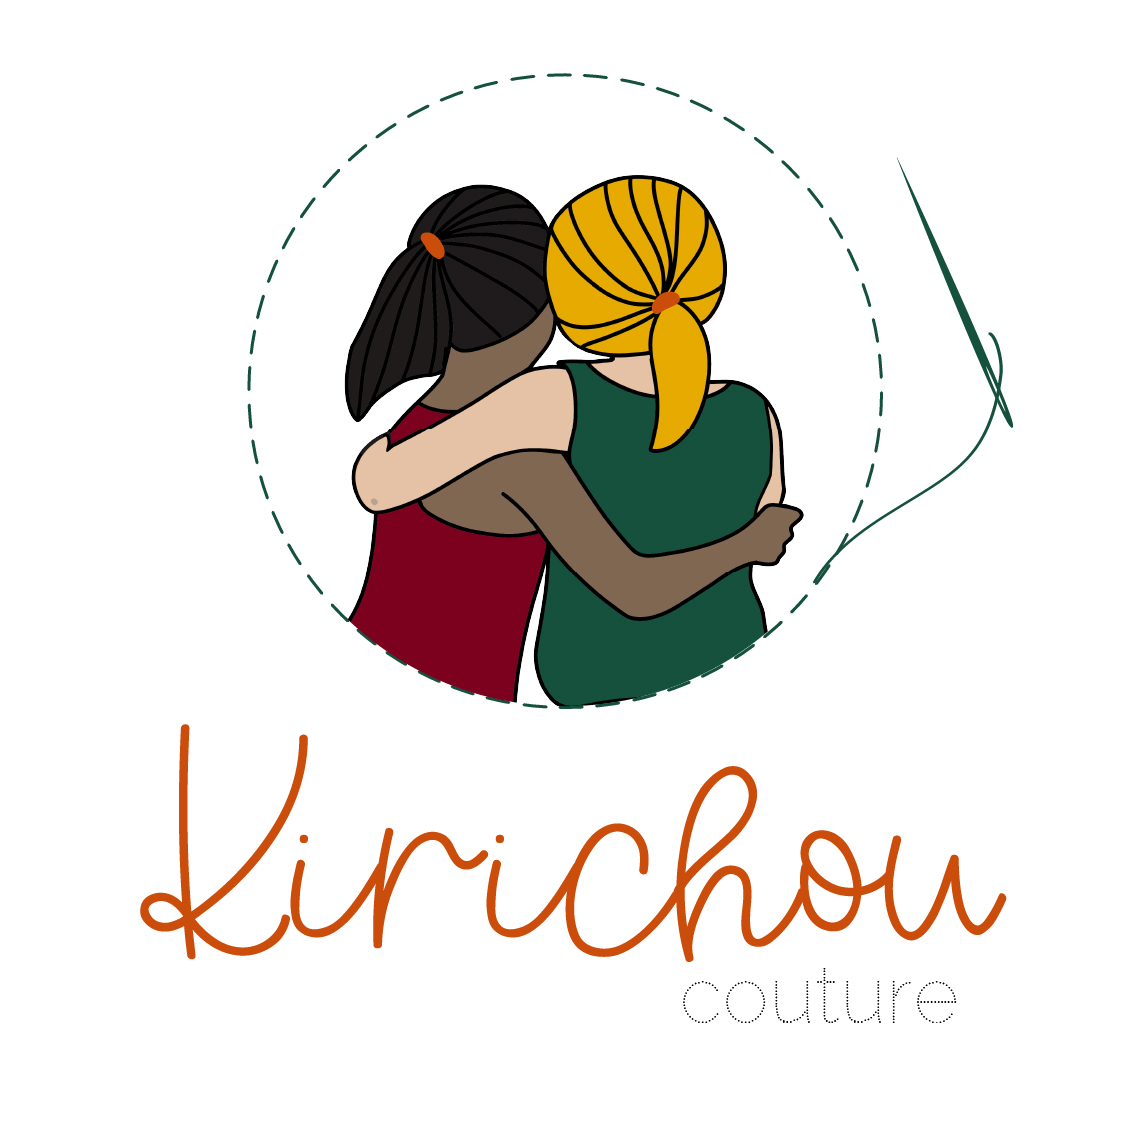 Kirichou Couture